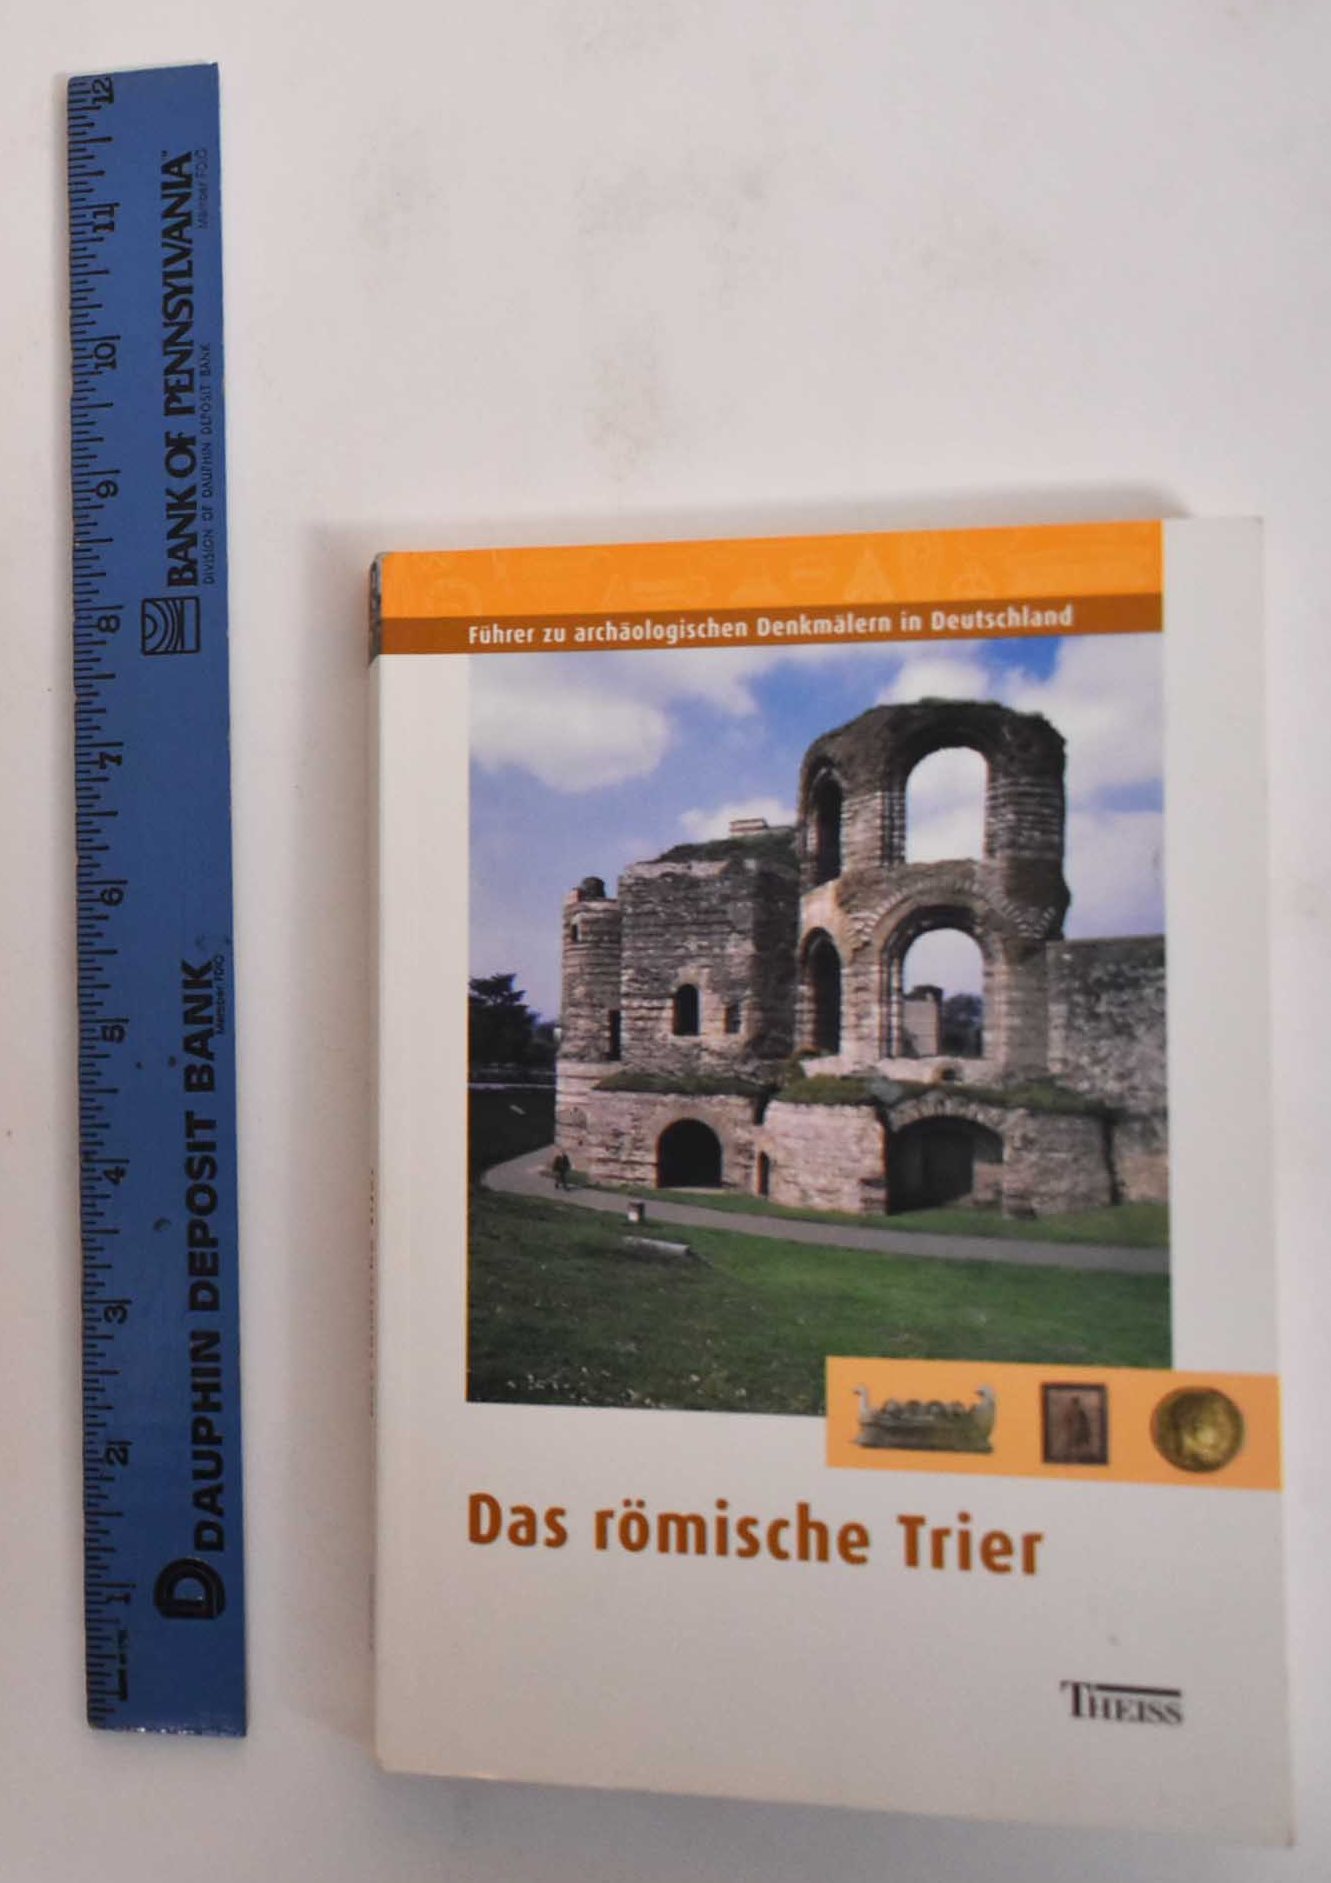 Das Romische Trier: Fuhrer Zu Archaologischen Denkmalern In Deutschland - Kuhnen, Hans-Peter and Lukas Clemens